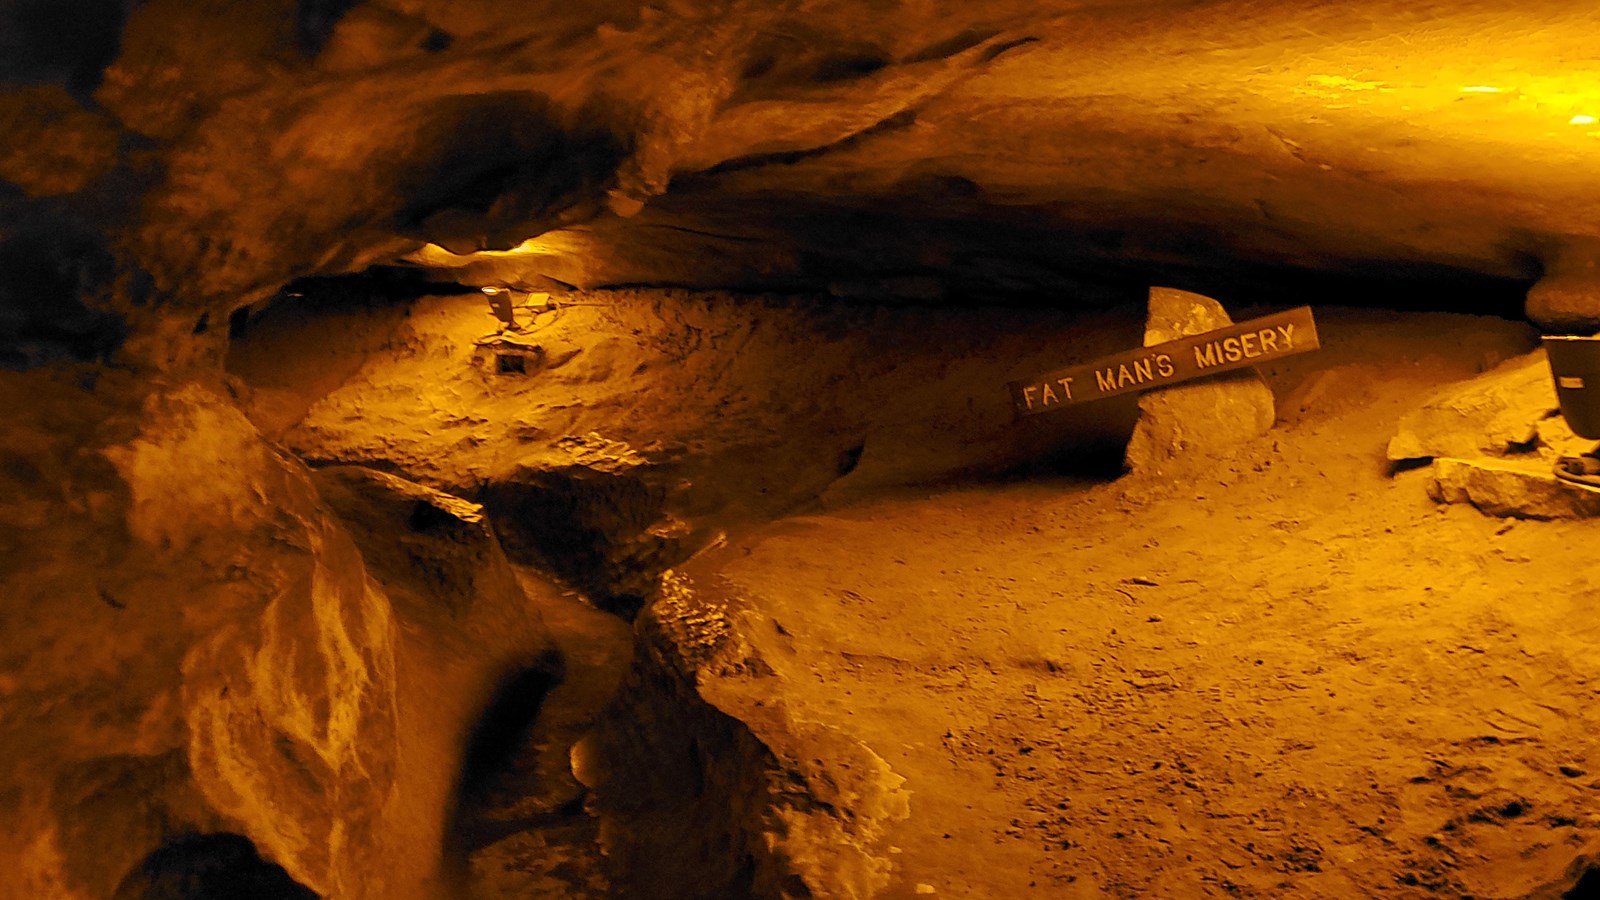 A narrow key hole shape cave passage. 